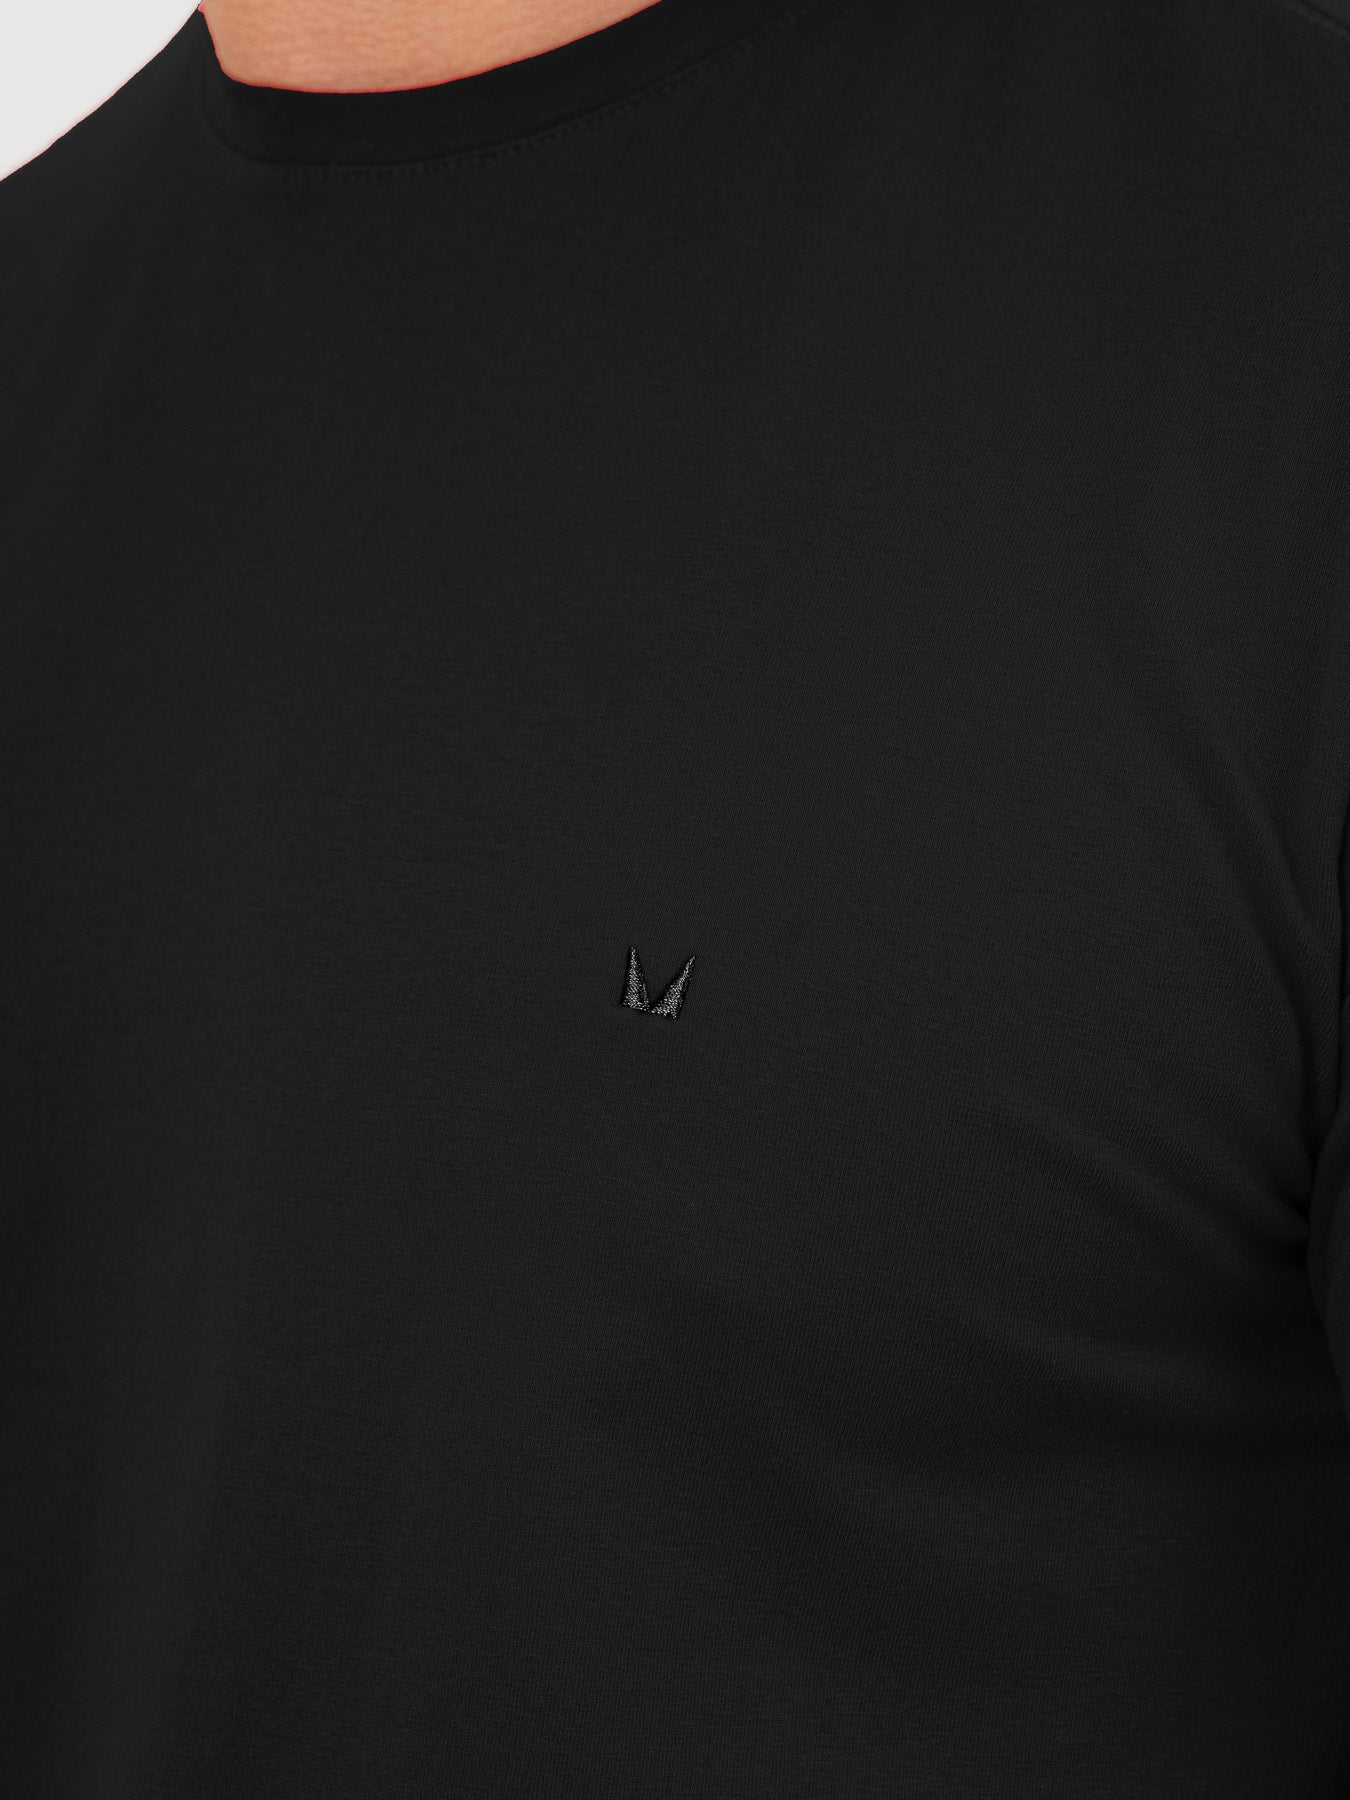 Camiseta Fio Egípcio All Black MVCK